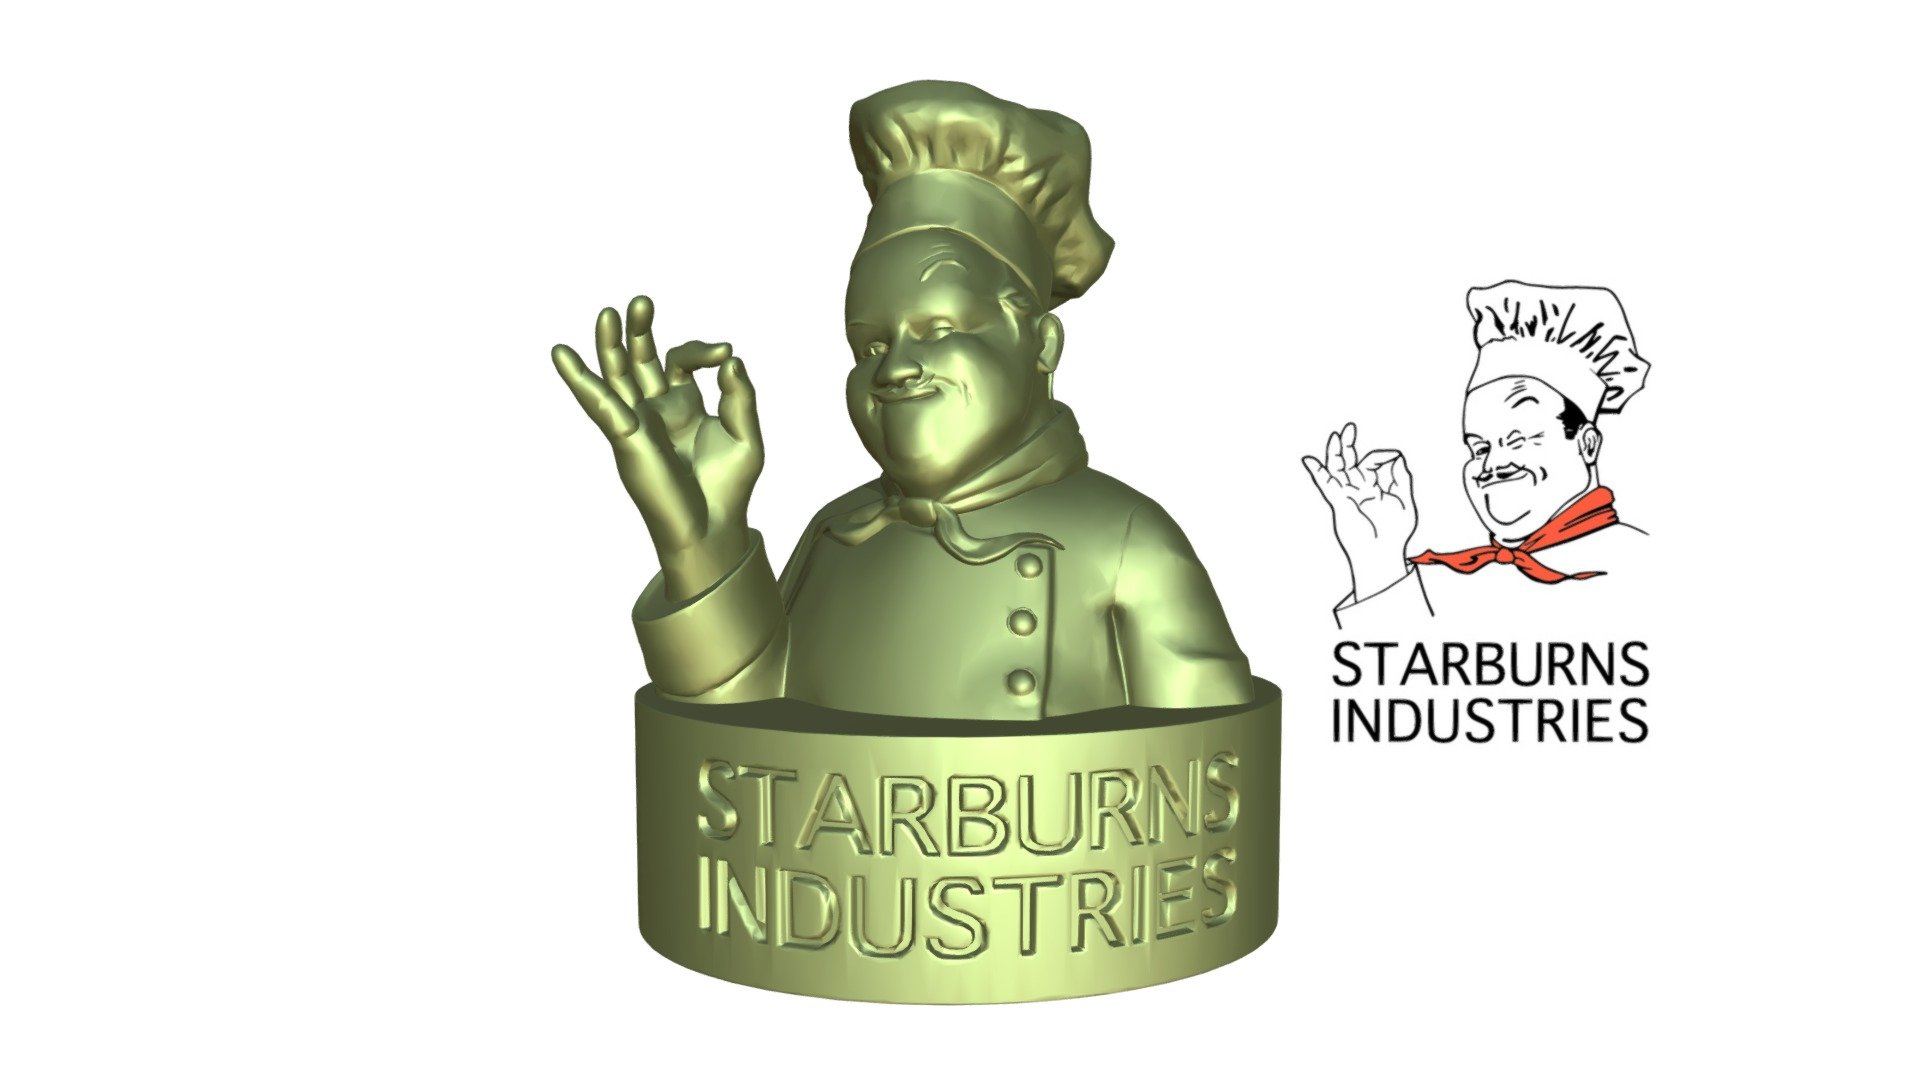 Starburns Industries (2012-) logo remake by scottbrody666 on